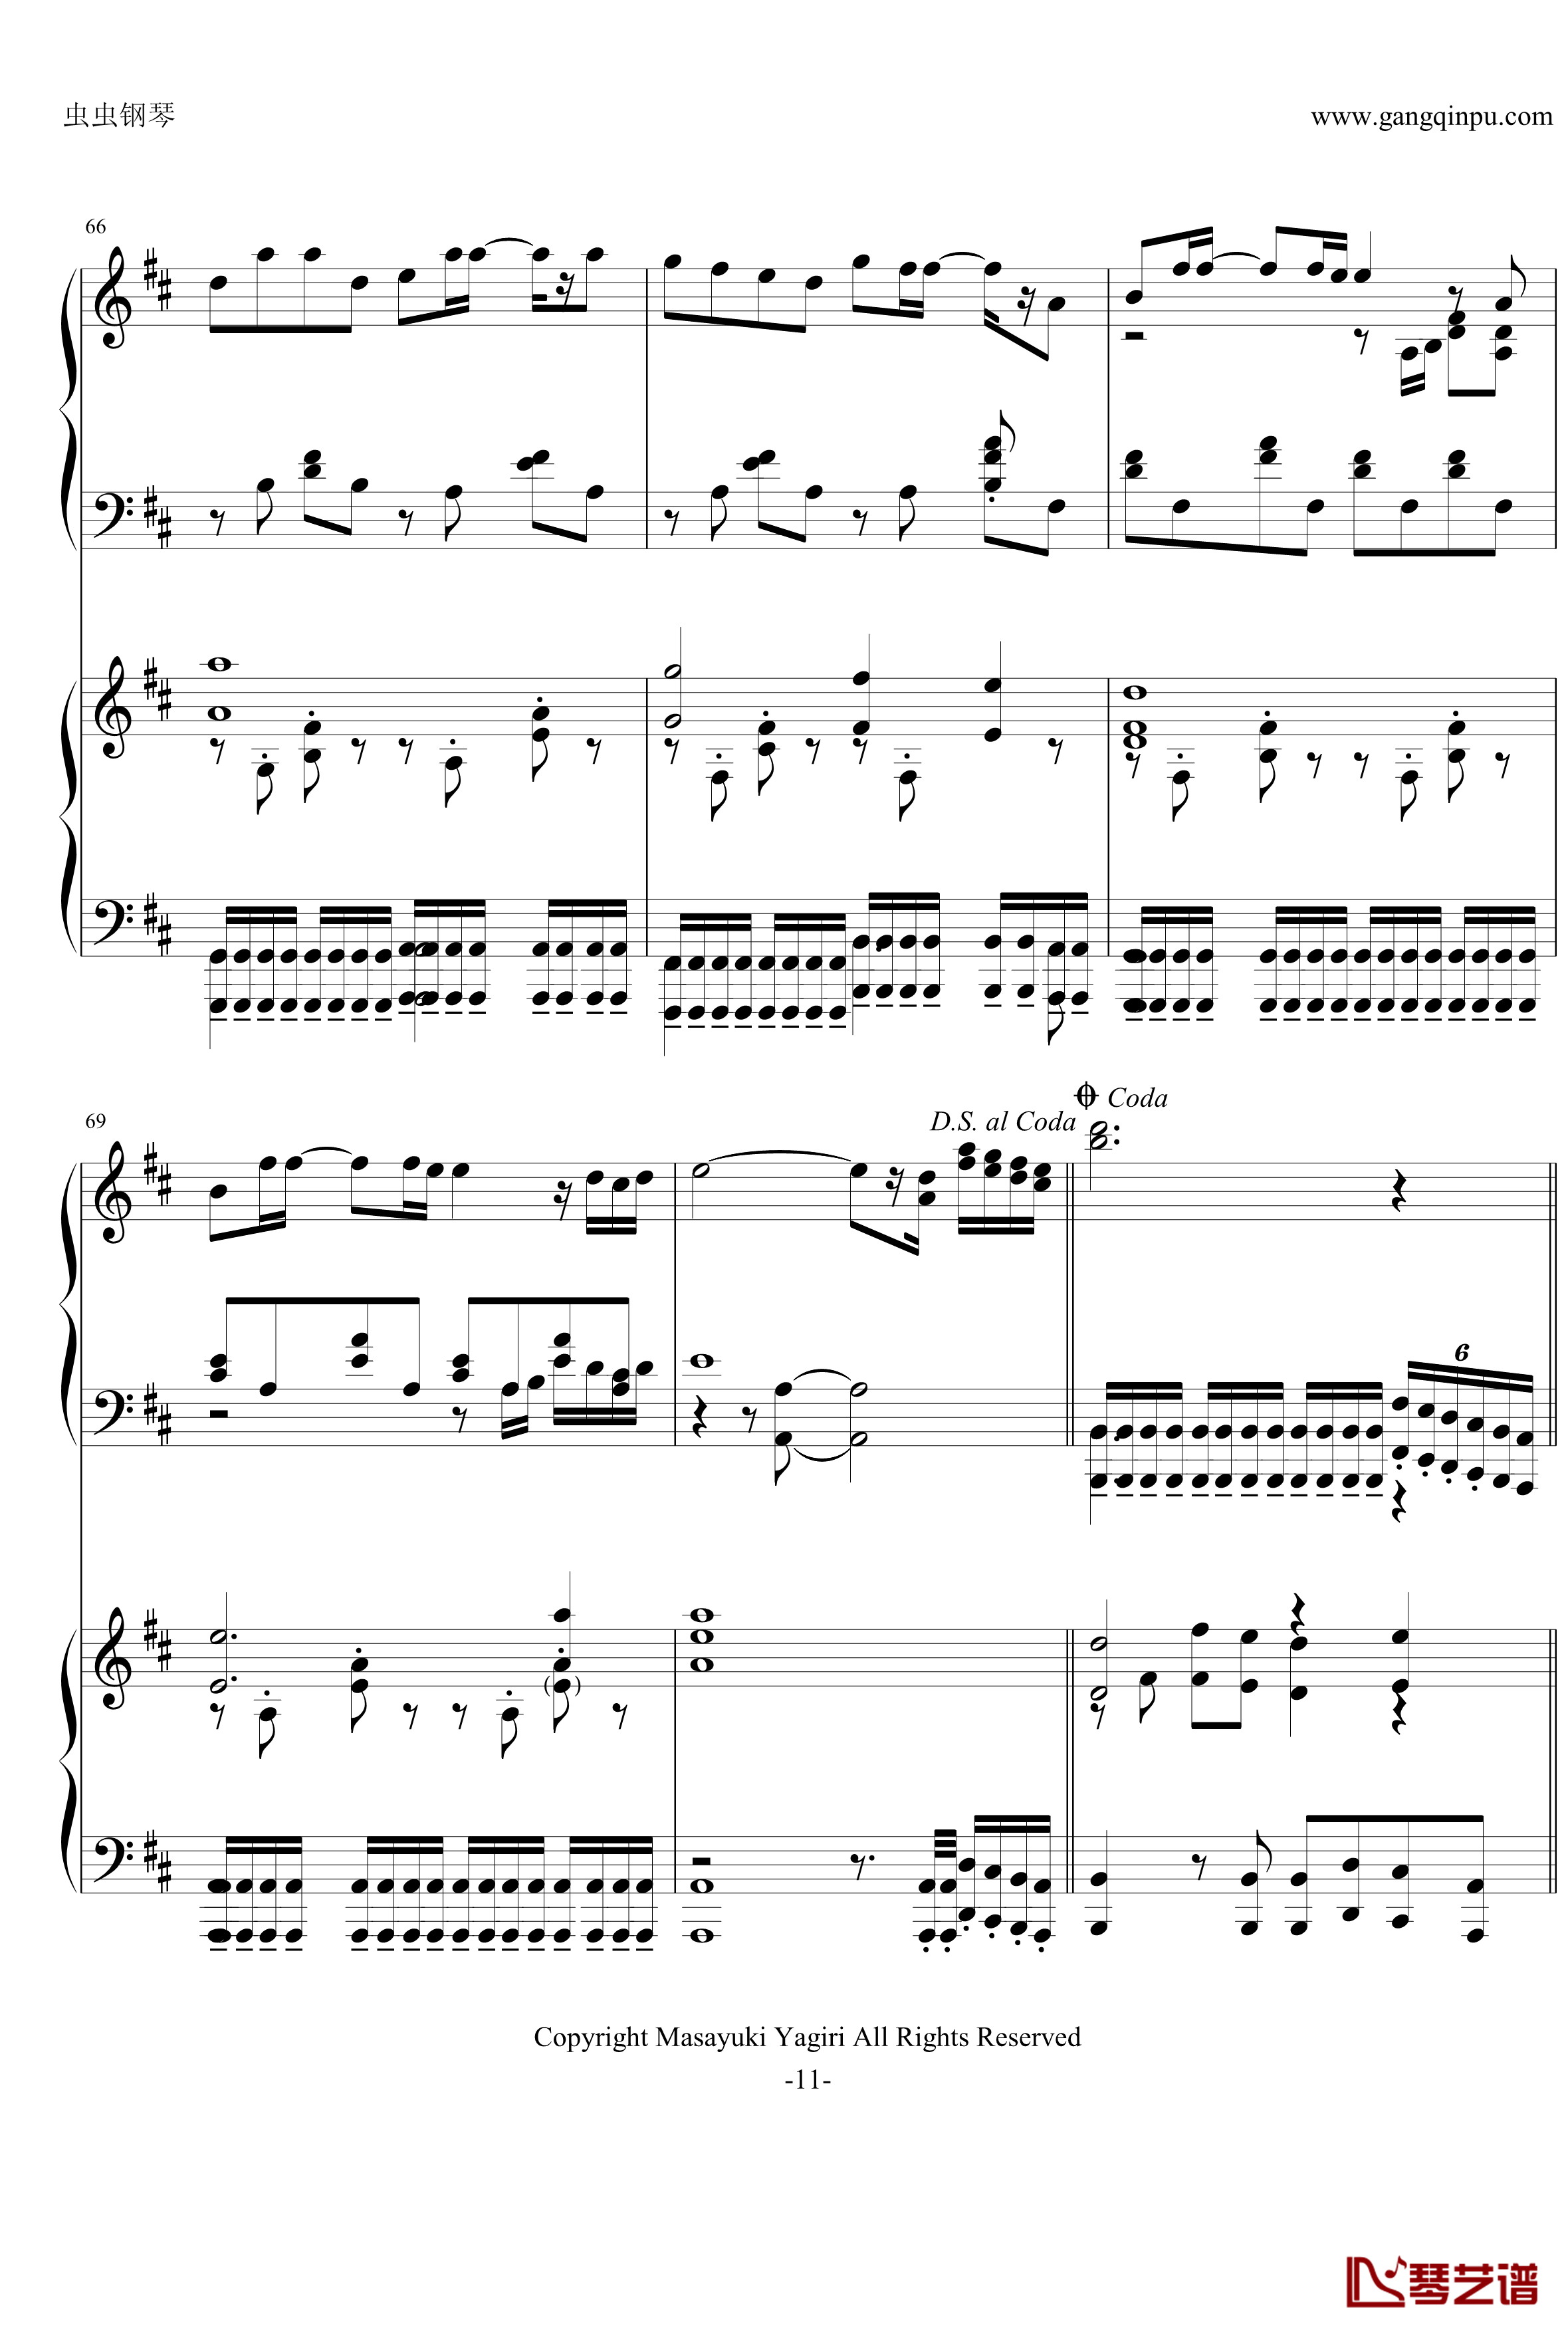 夕日坂钢琴谱-初音ミク 双钢琴版v1.01-初音未来11